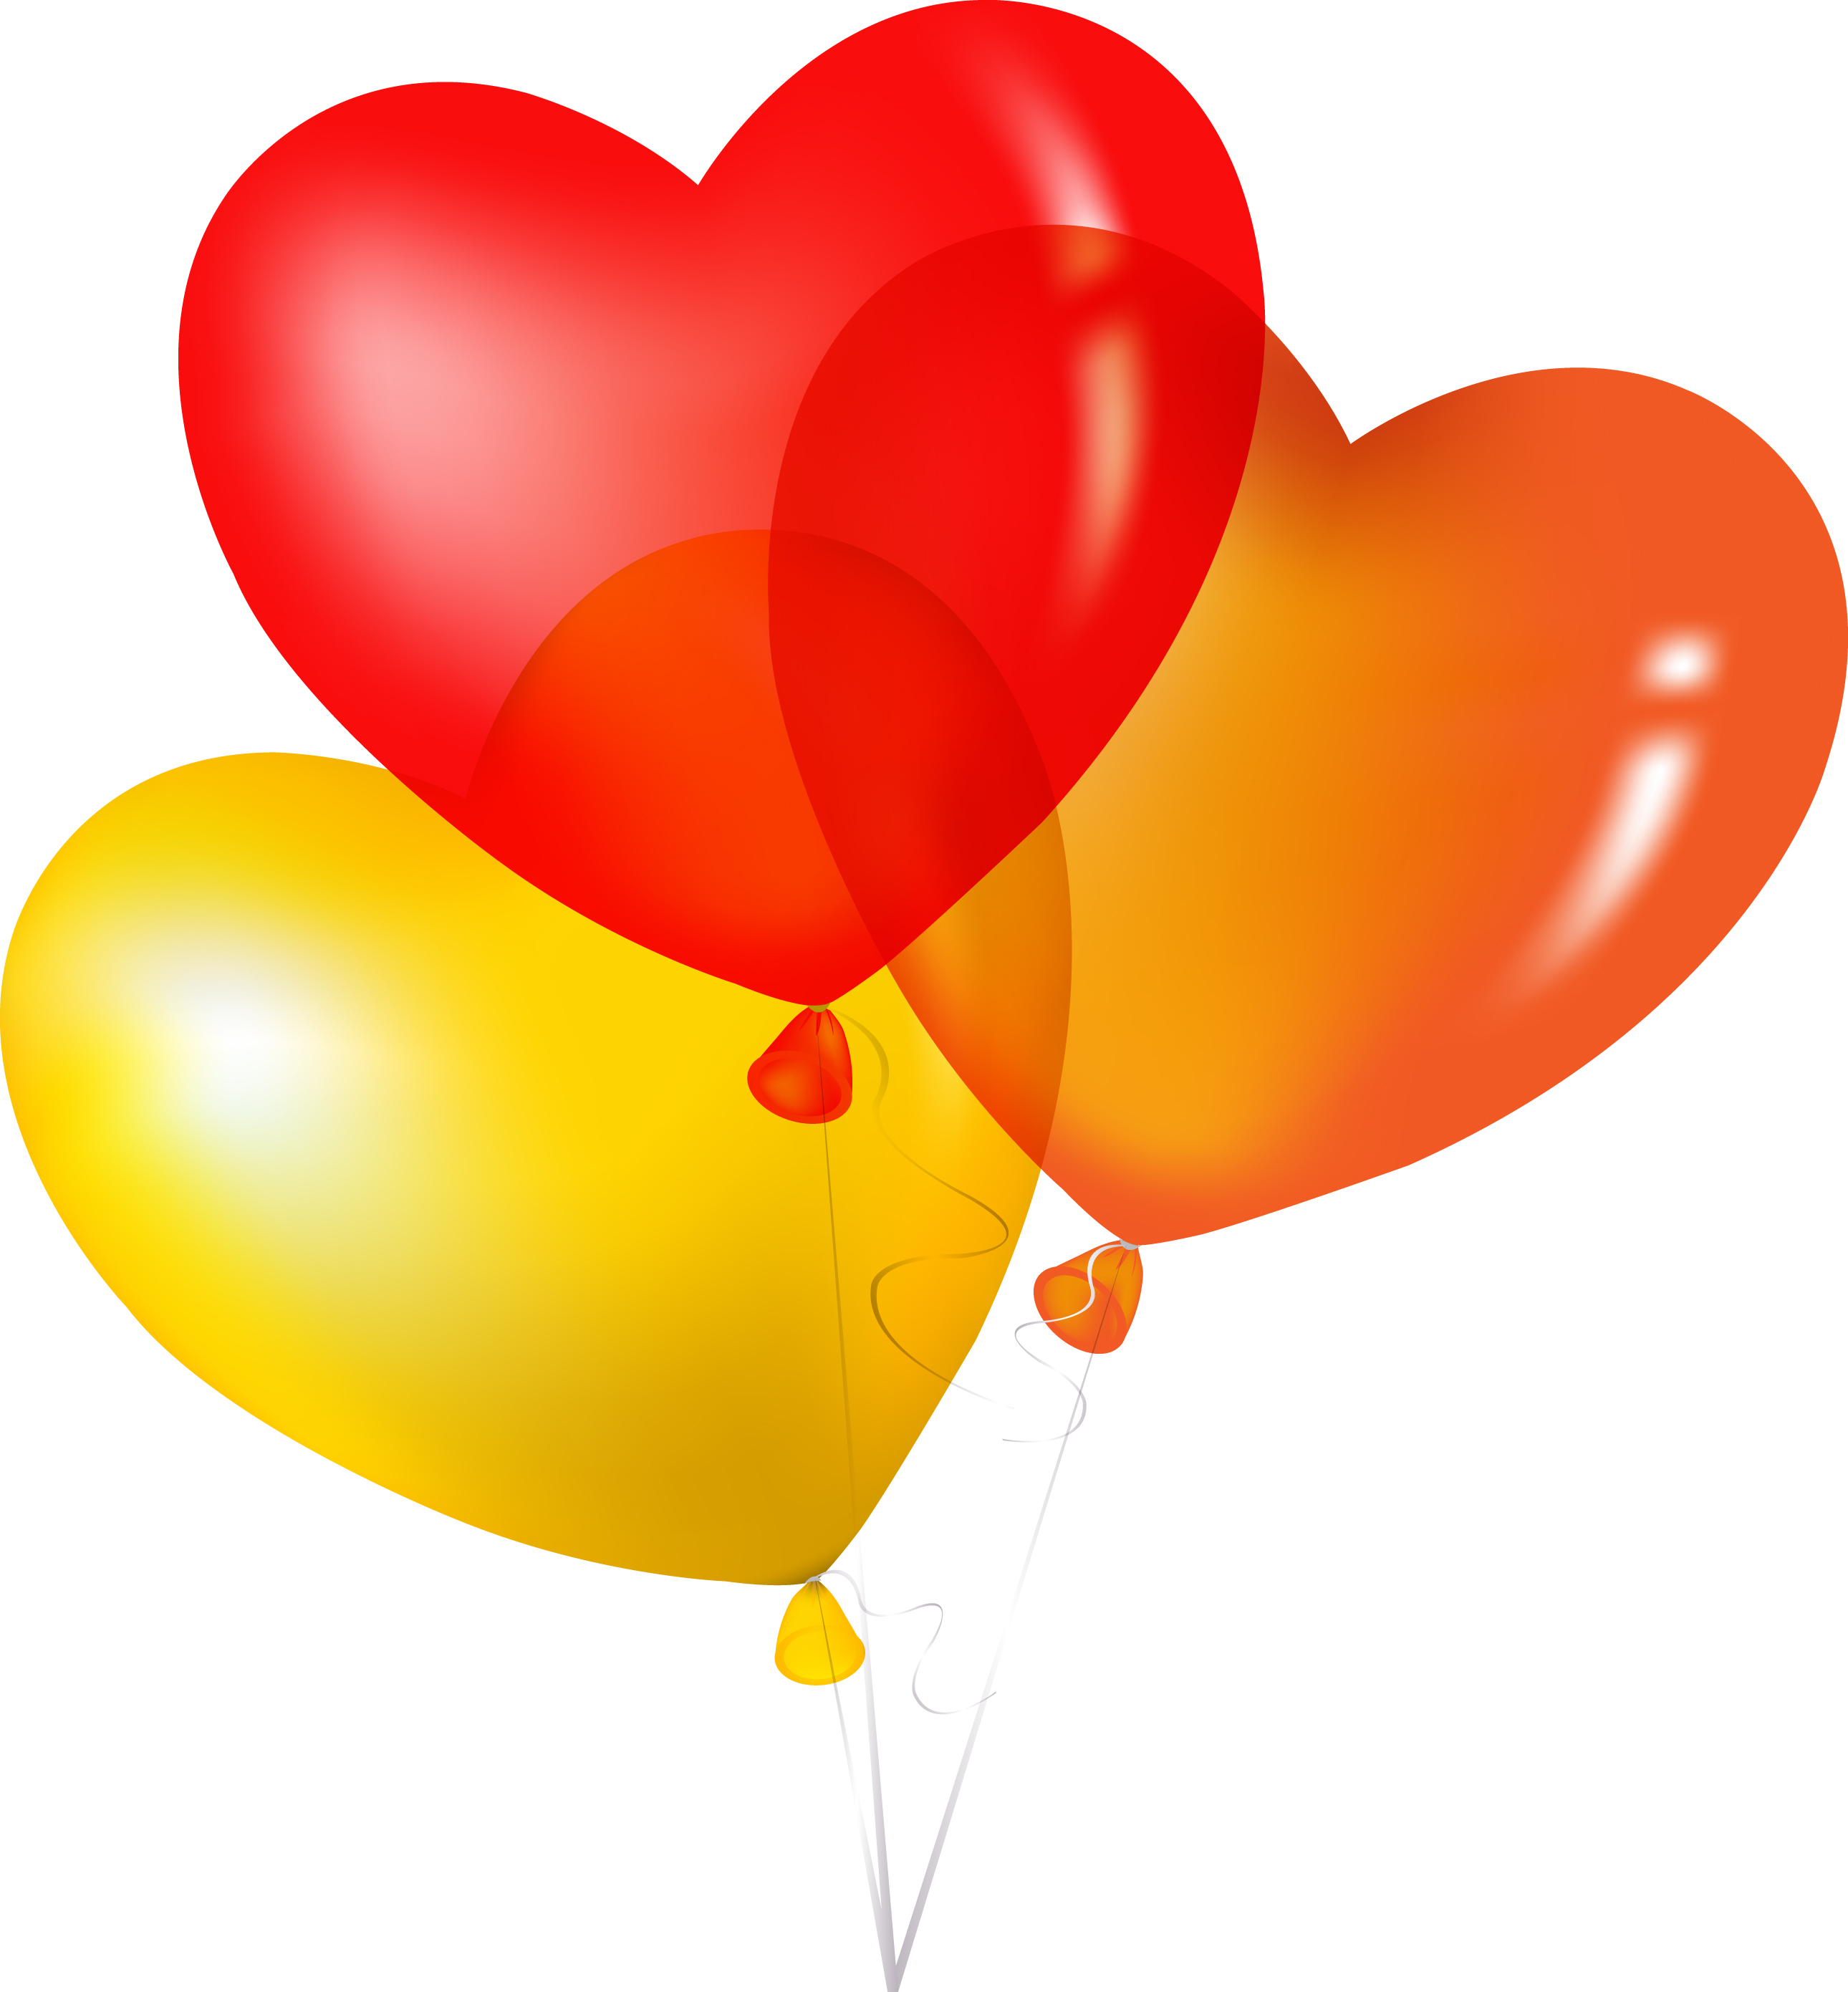 Gambar Ballon Vector Free Download Clip Art Balloon Images Clipart ...